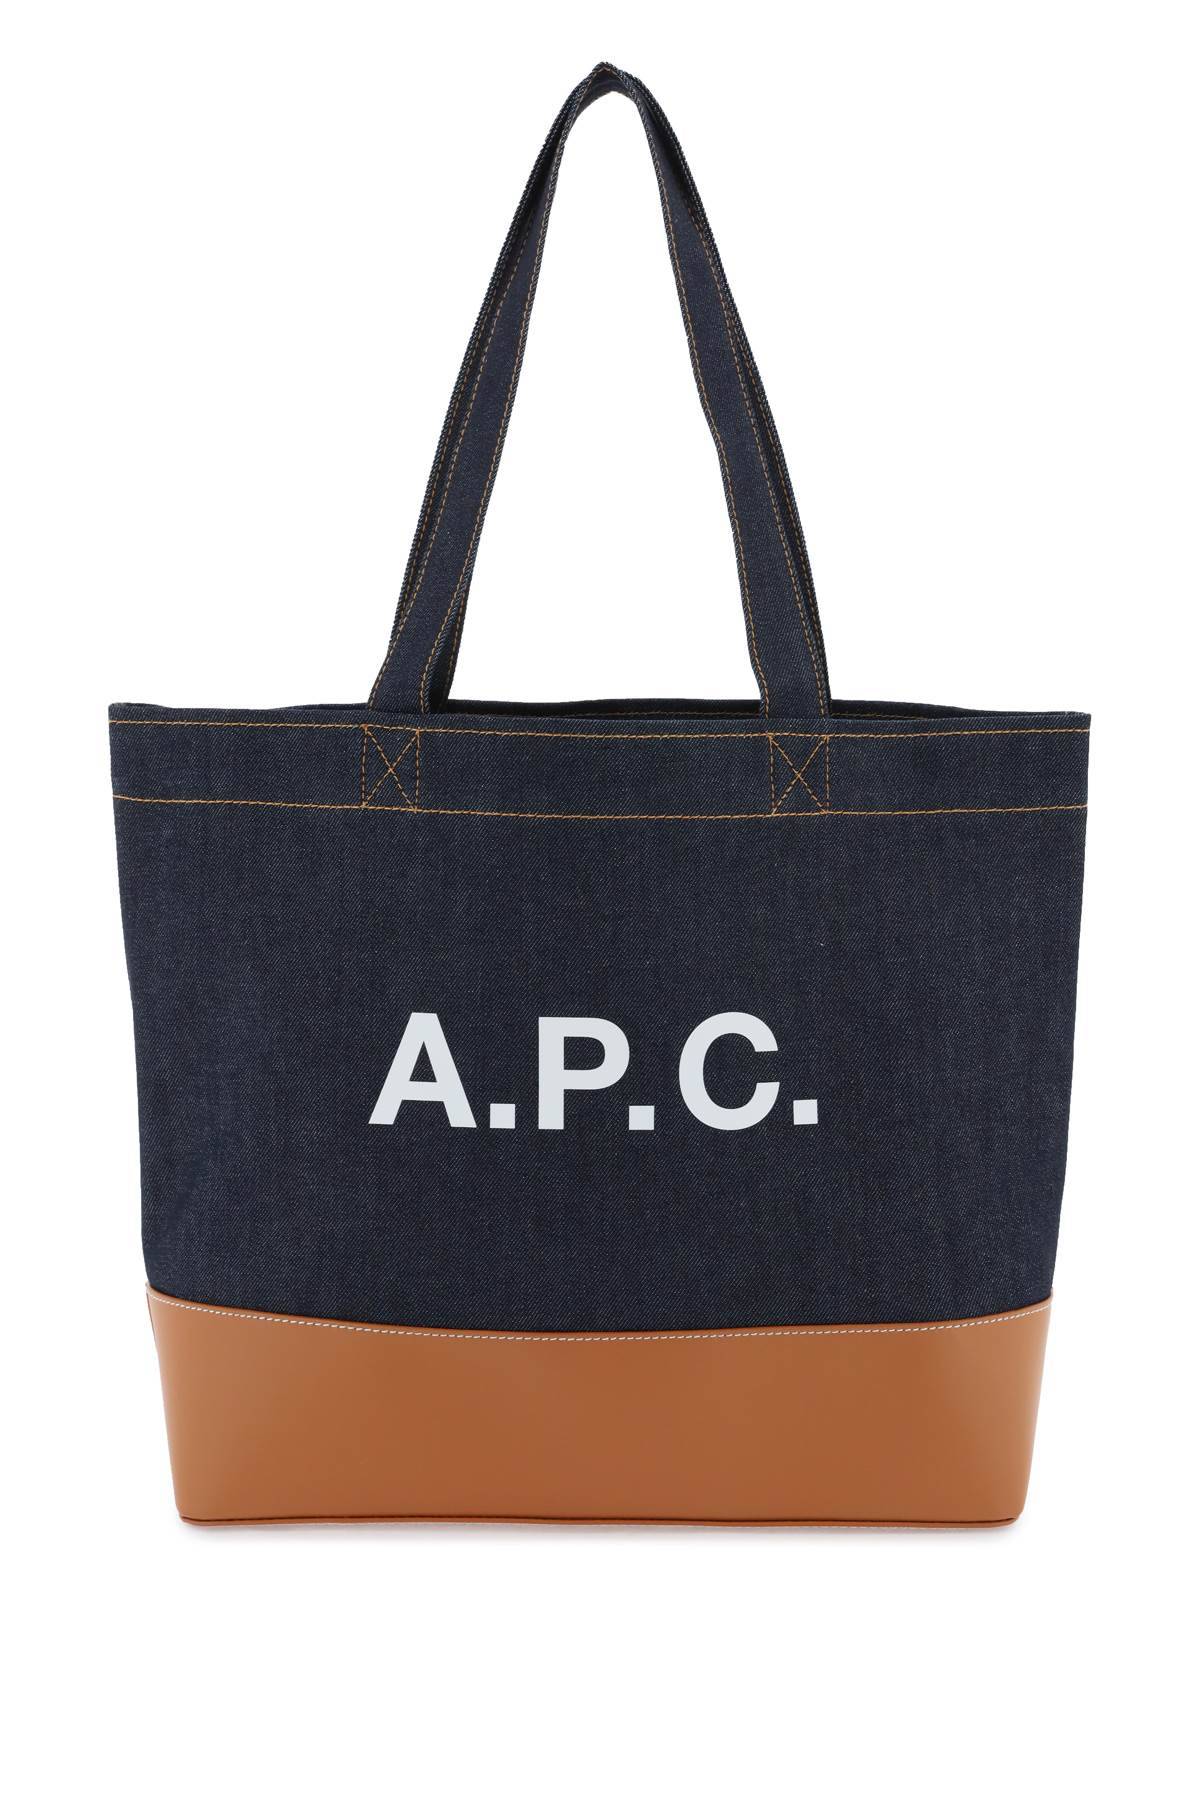 A.P.C. A. P.C. axel e/w tote bag